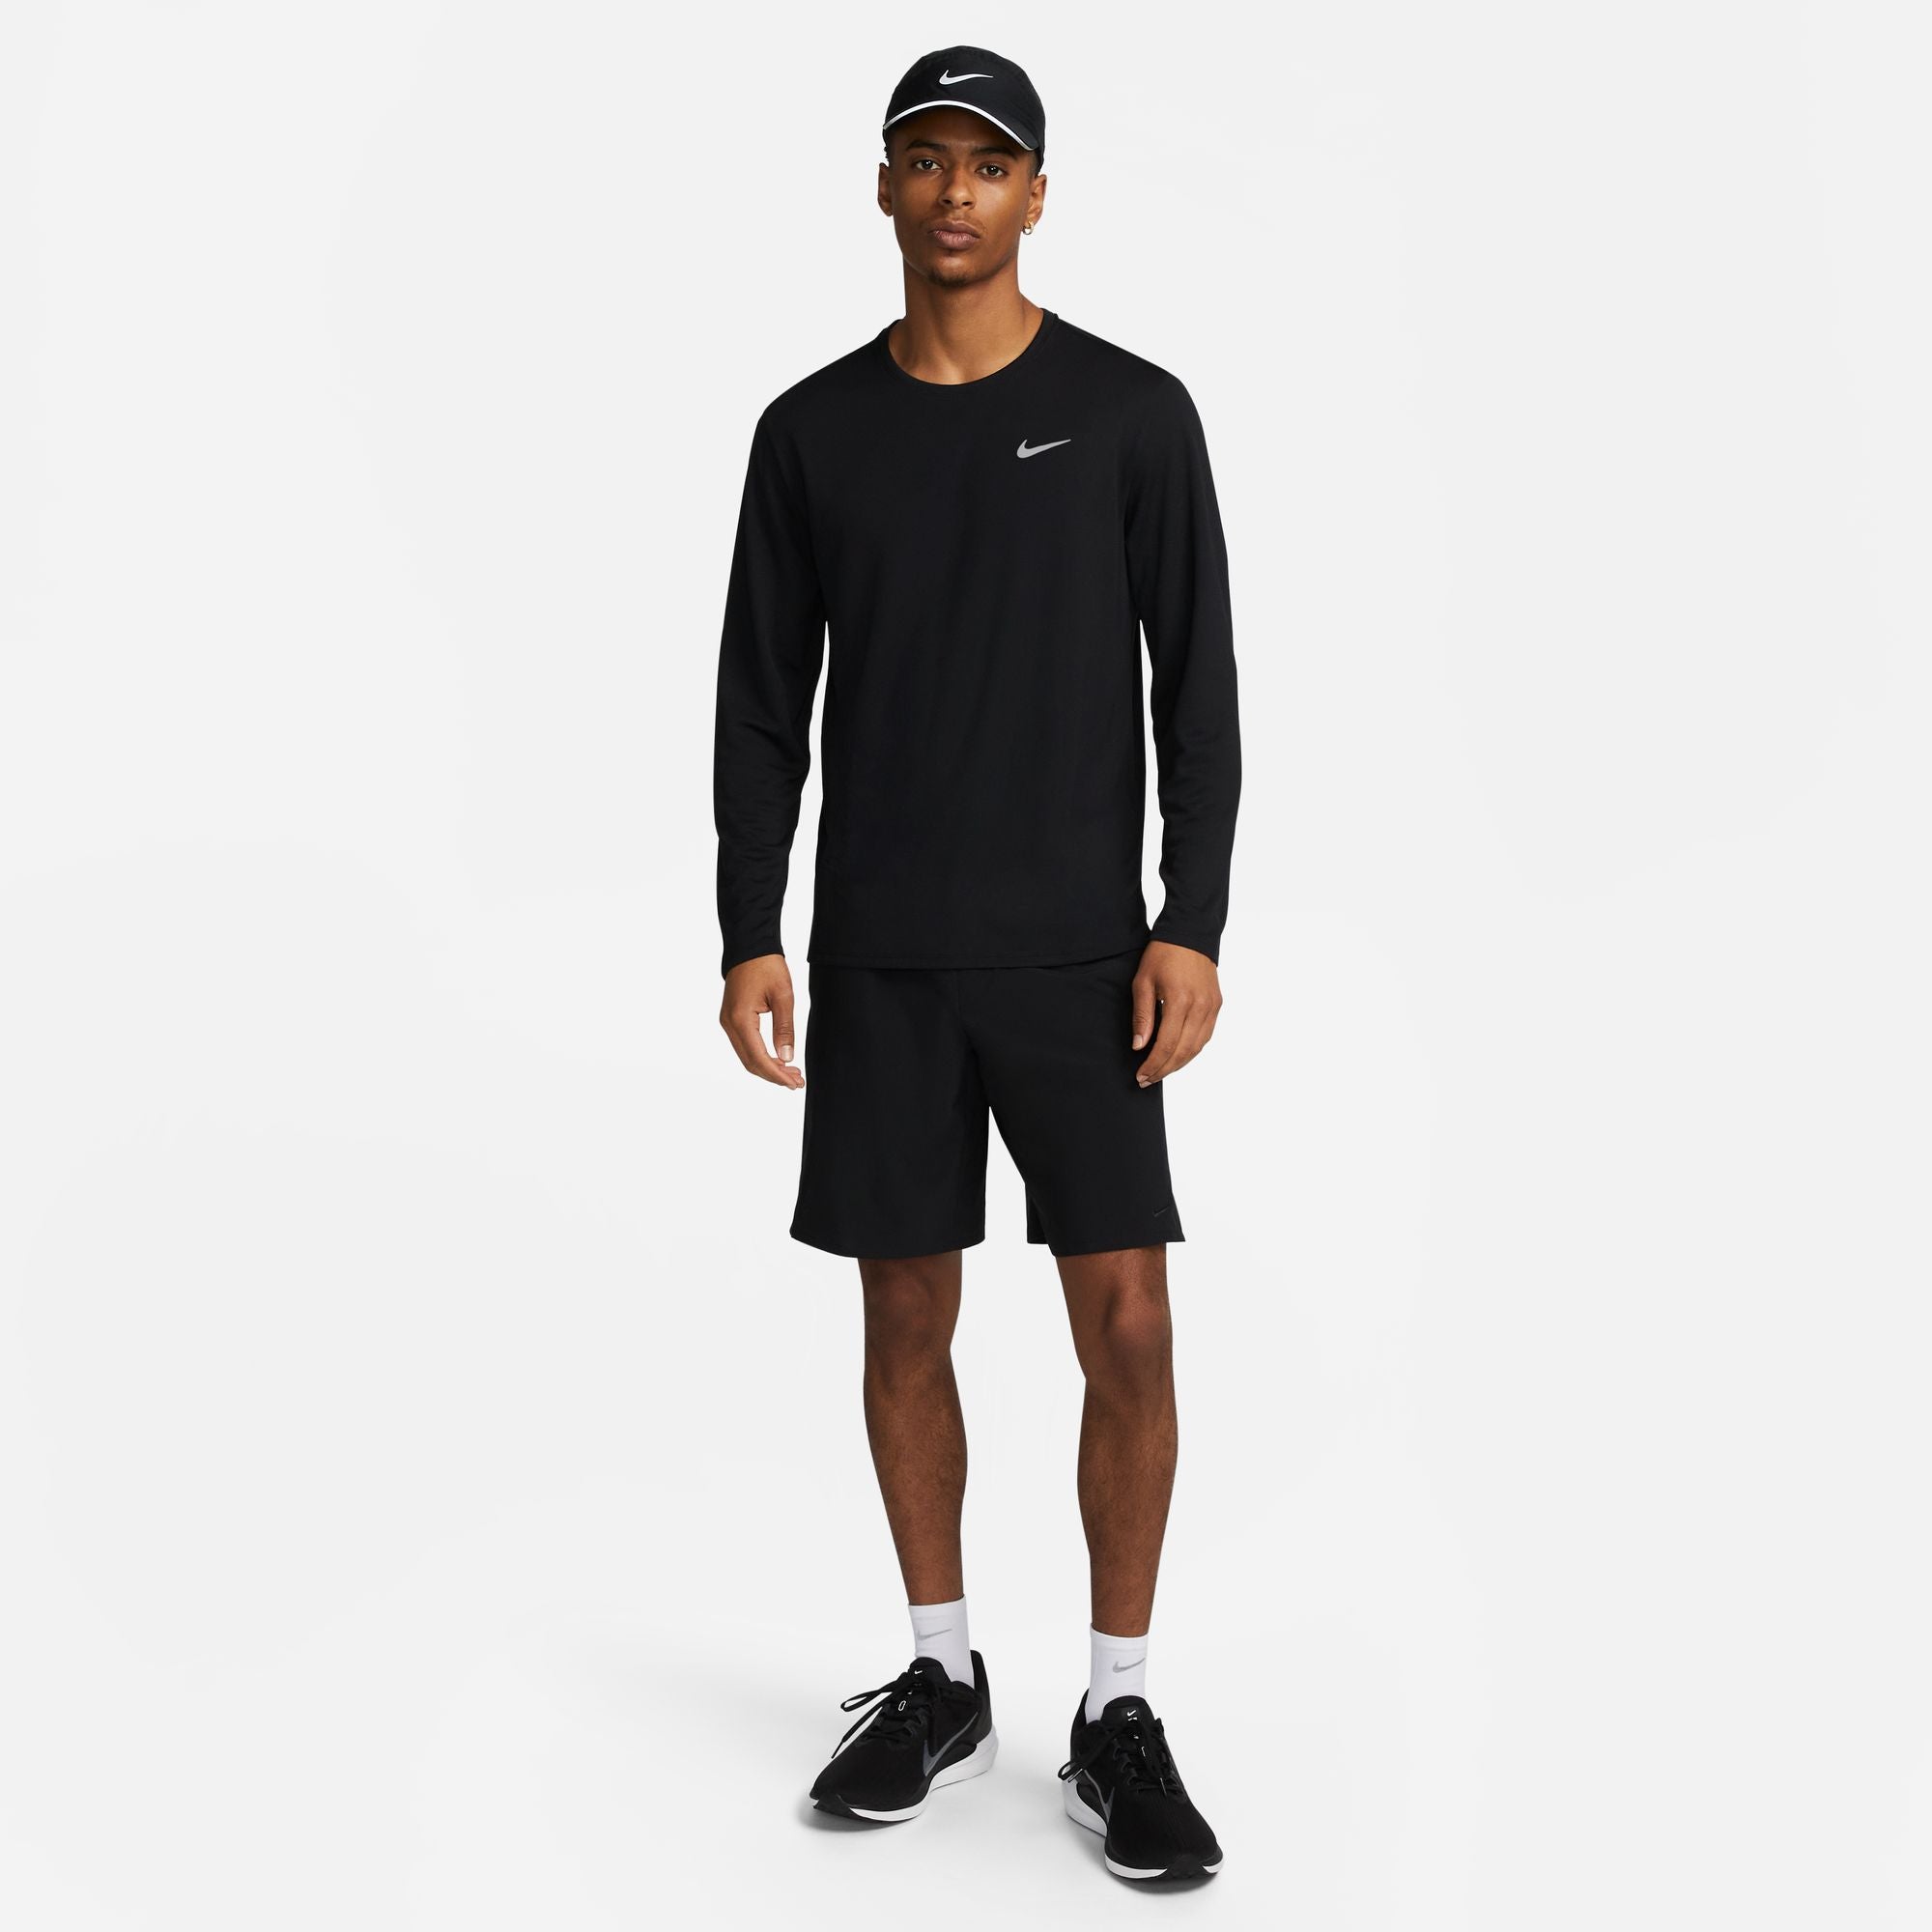 T-shirt Nike Running Manches Longues Miller - Noir